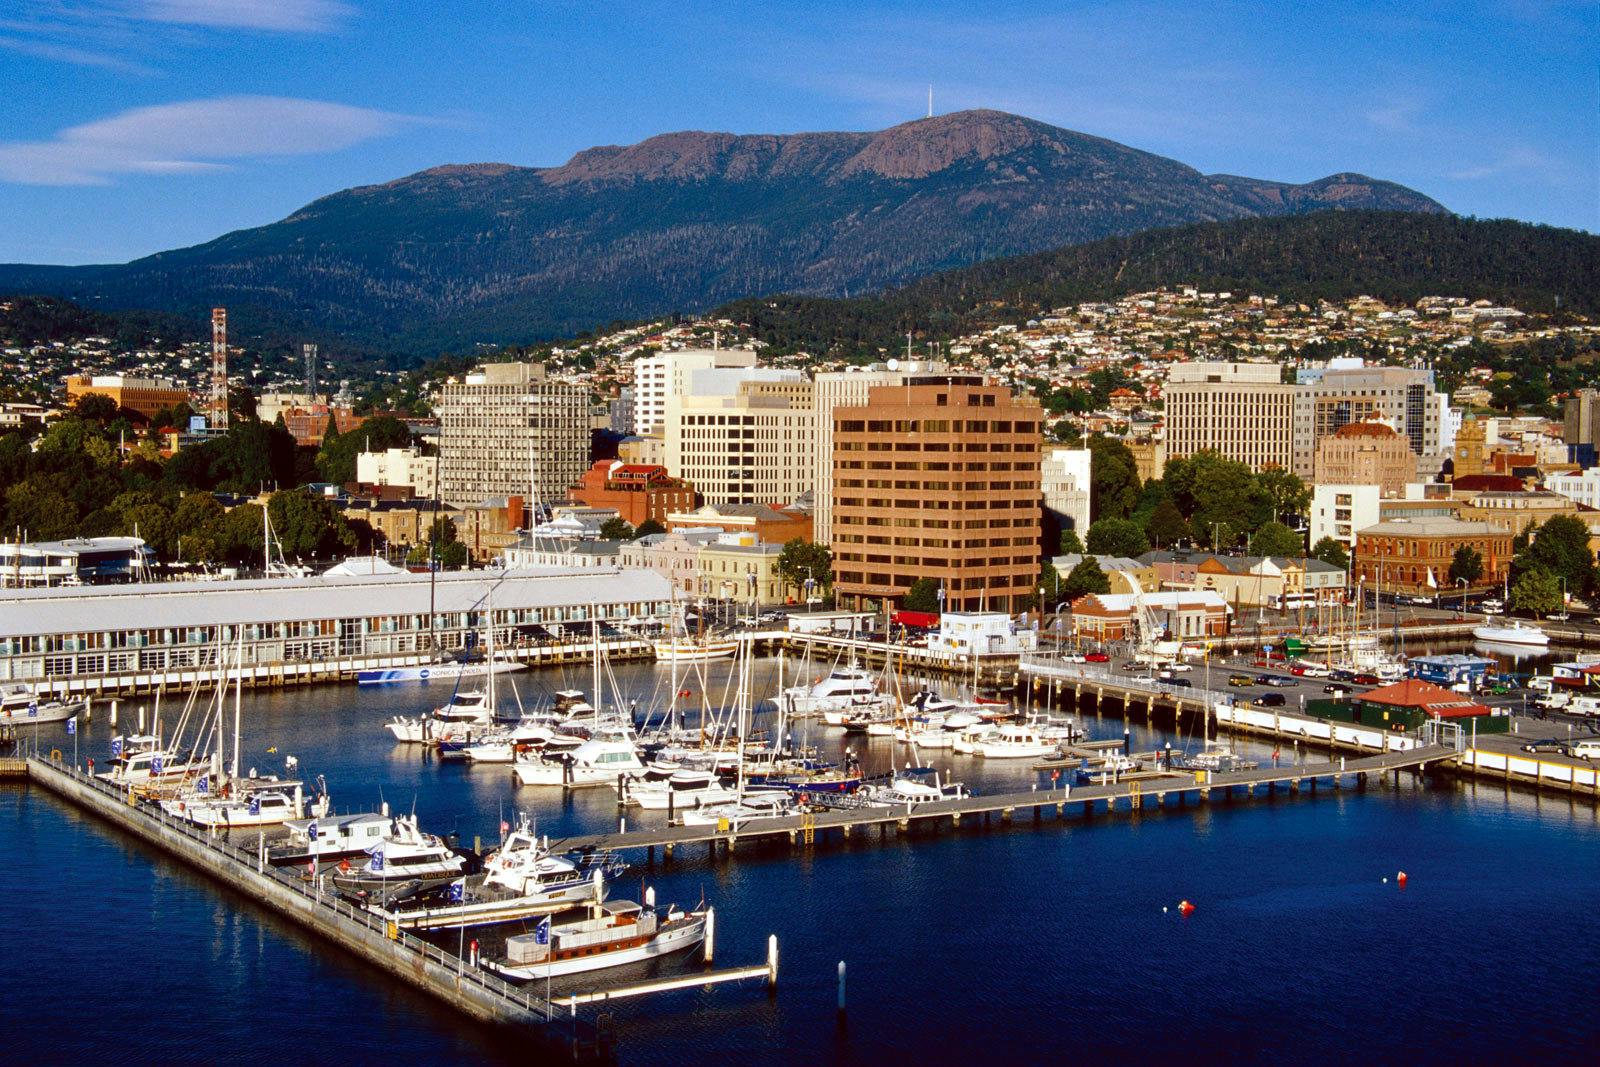 Hobart, Tasmania, Australia Cruises Excursions, Reviews, & Photos